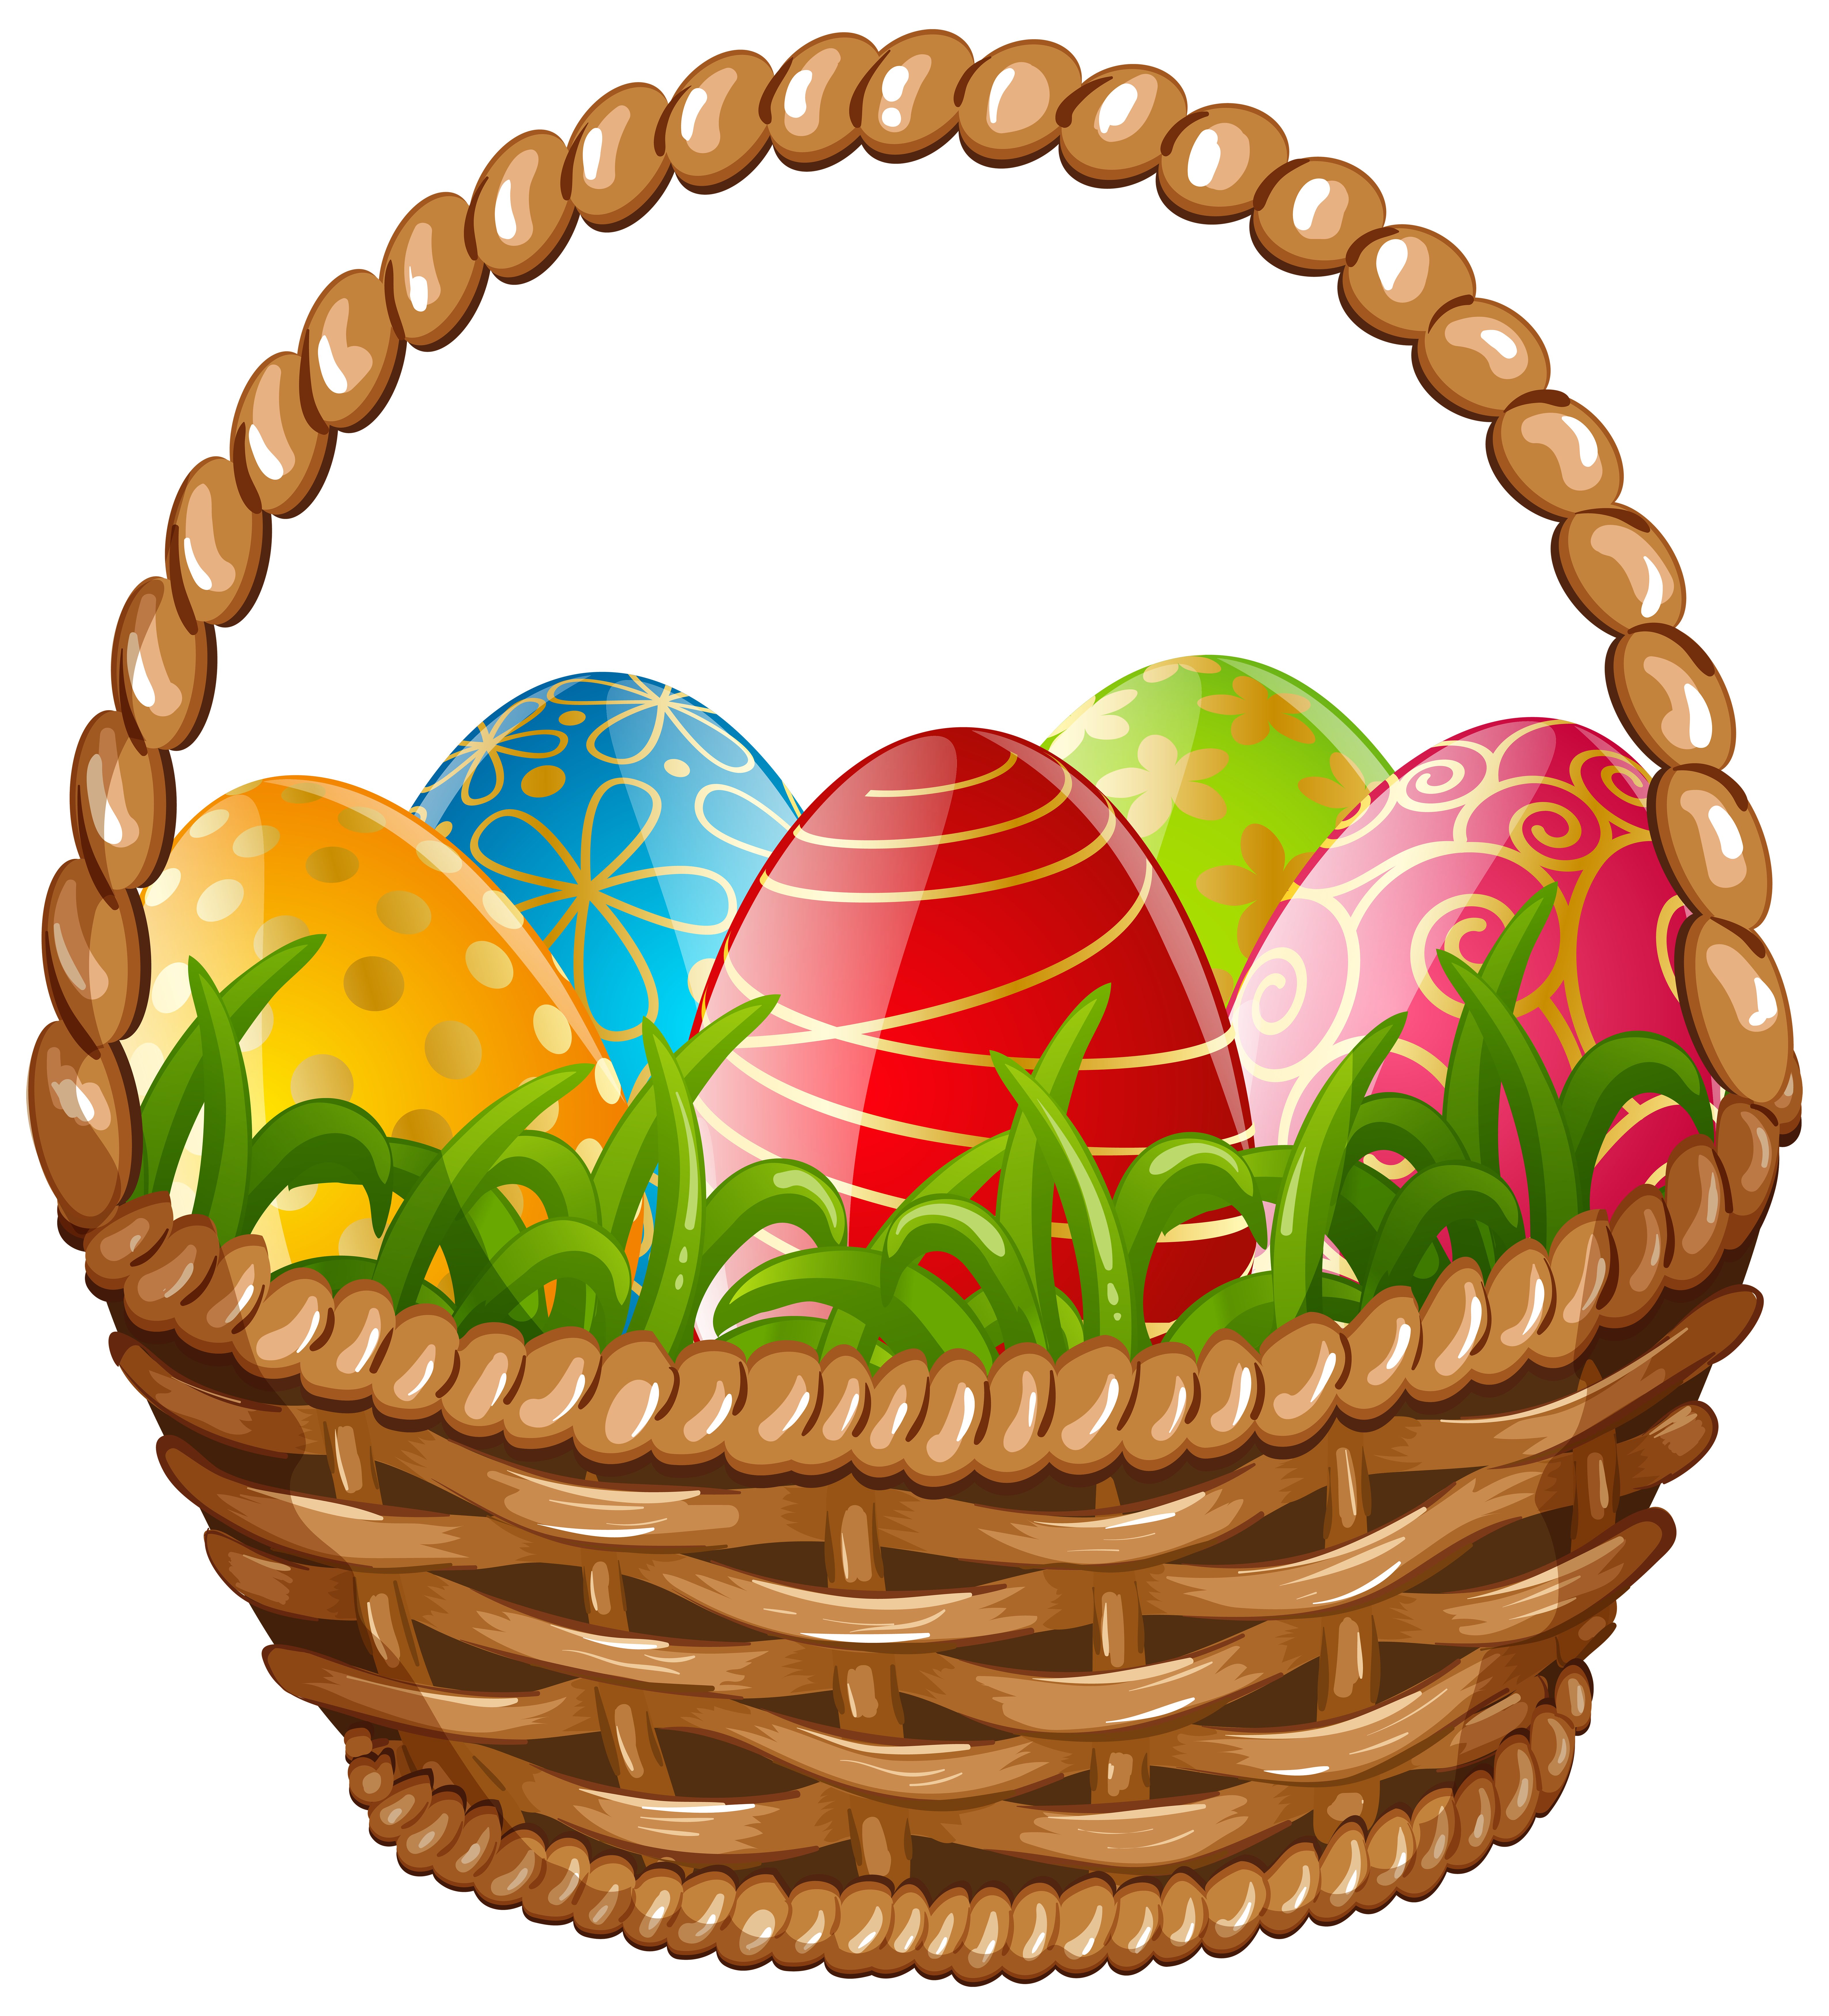 Easter Egg Basket PNG Clip Art Image | Gallery Yopriceville - High ...